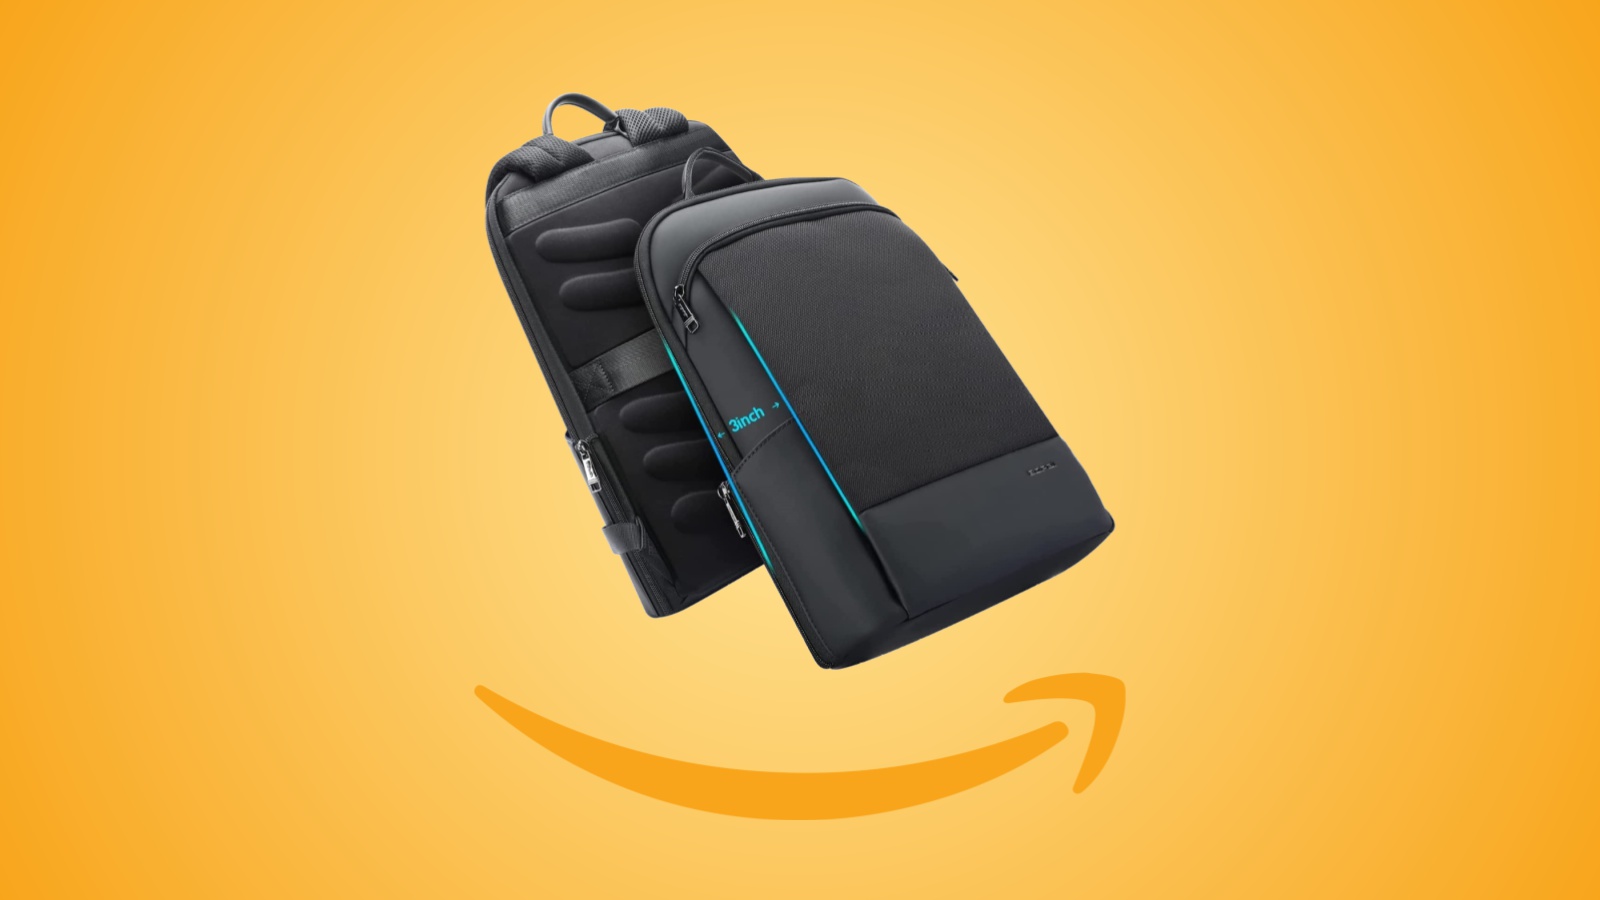 Offerte Amazon: zaino per laptop ultraleggero in sconto con l'Offerta Lampo